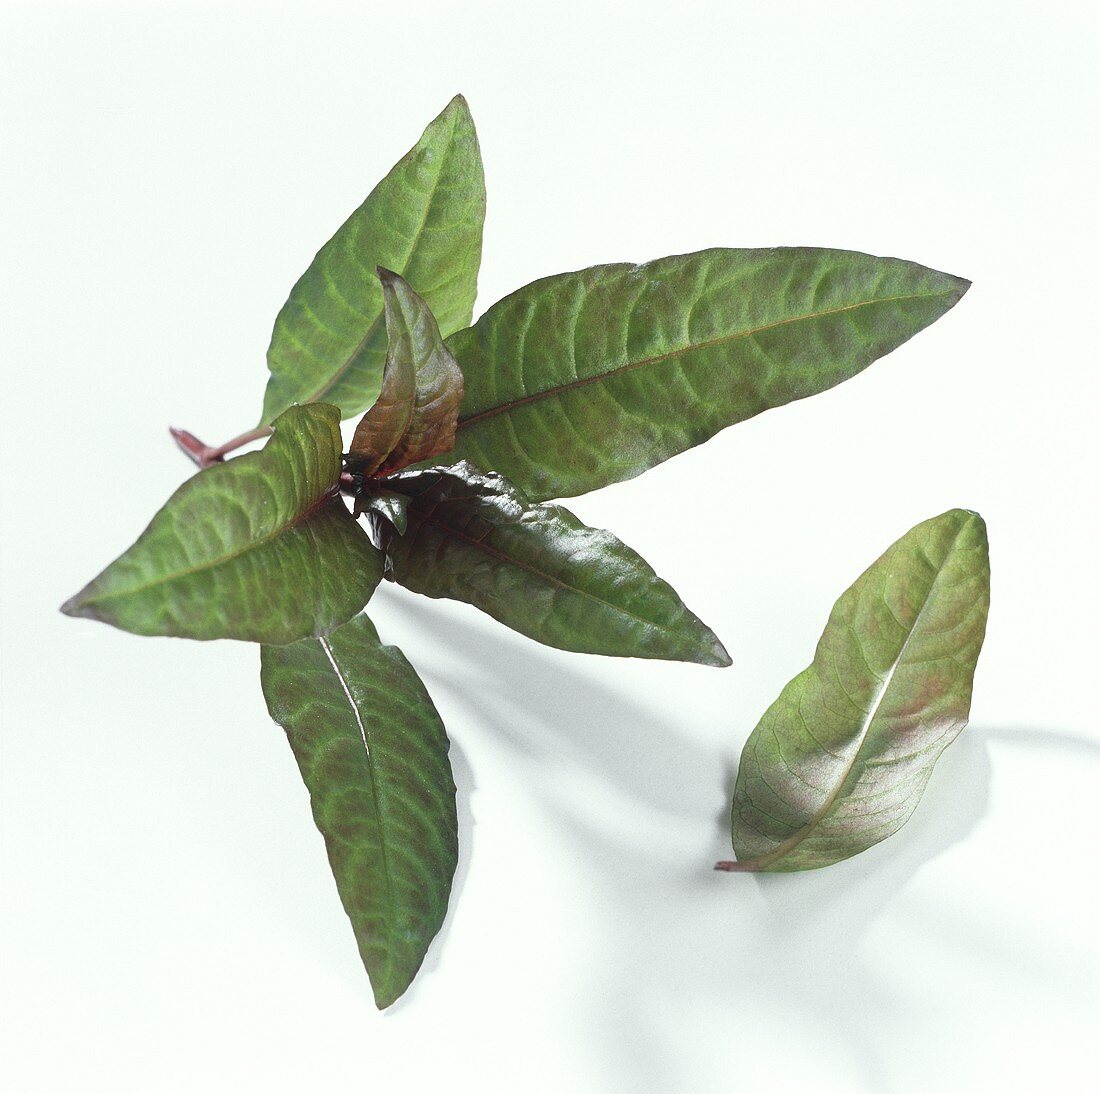 Marshpepper knotweed (Polygonum hydropiper)